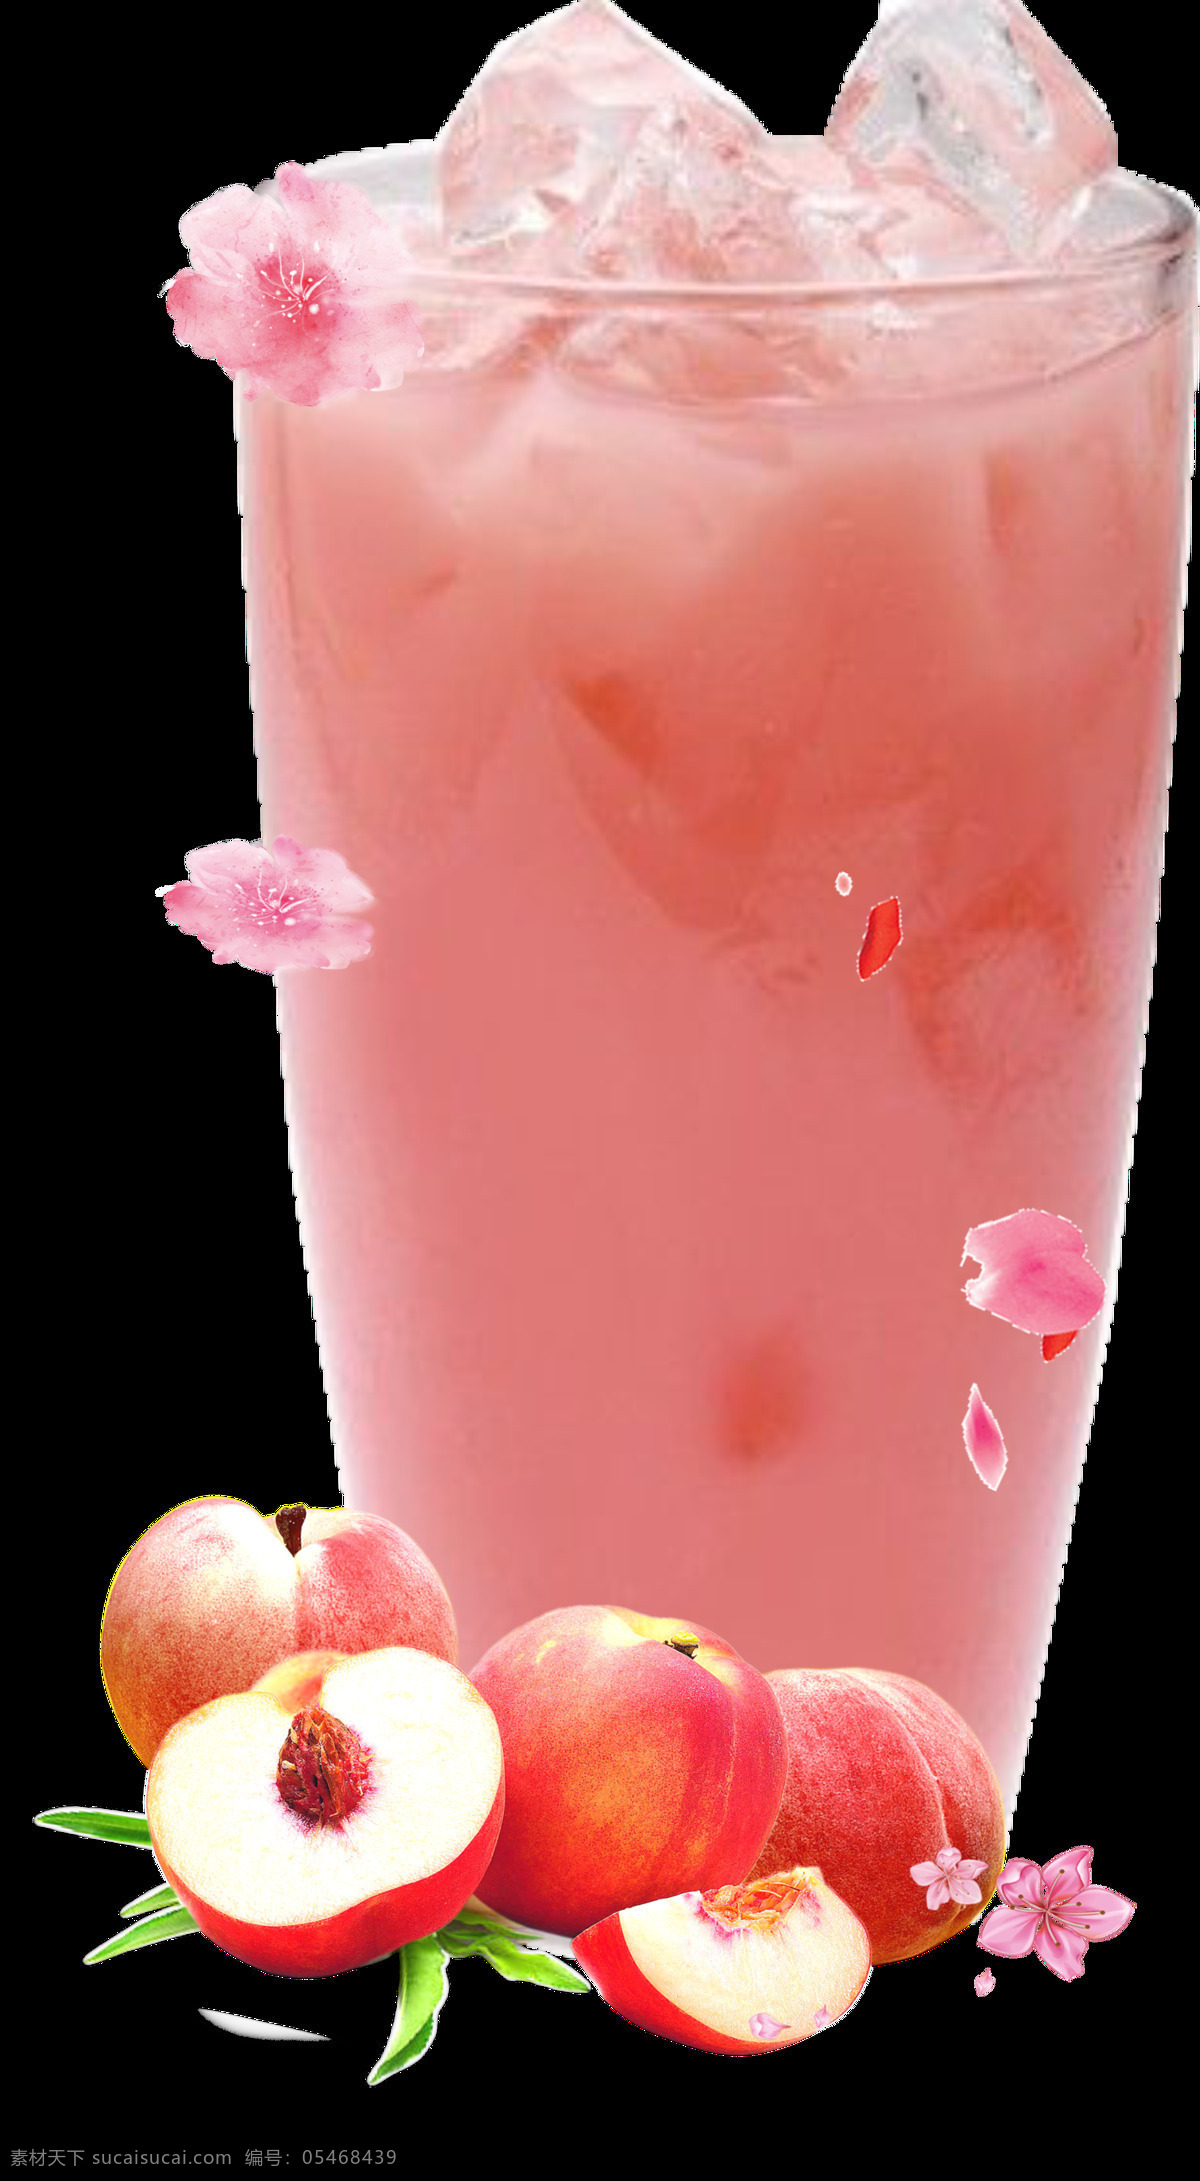 十里桃花 桃子 饮料 喝的 冰块 夏日 玫红 菜单菜谱